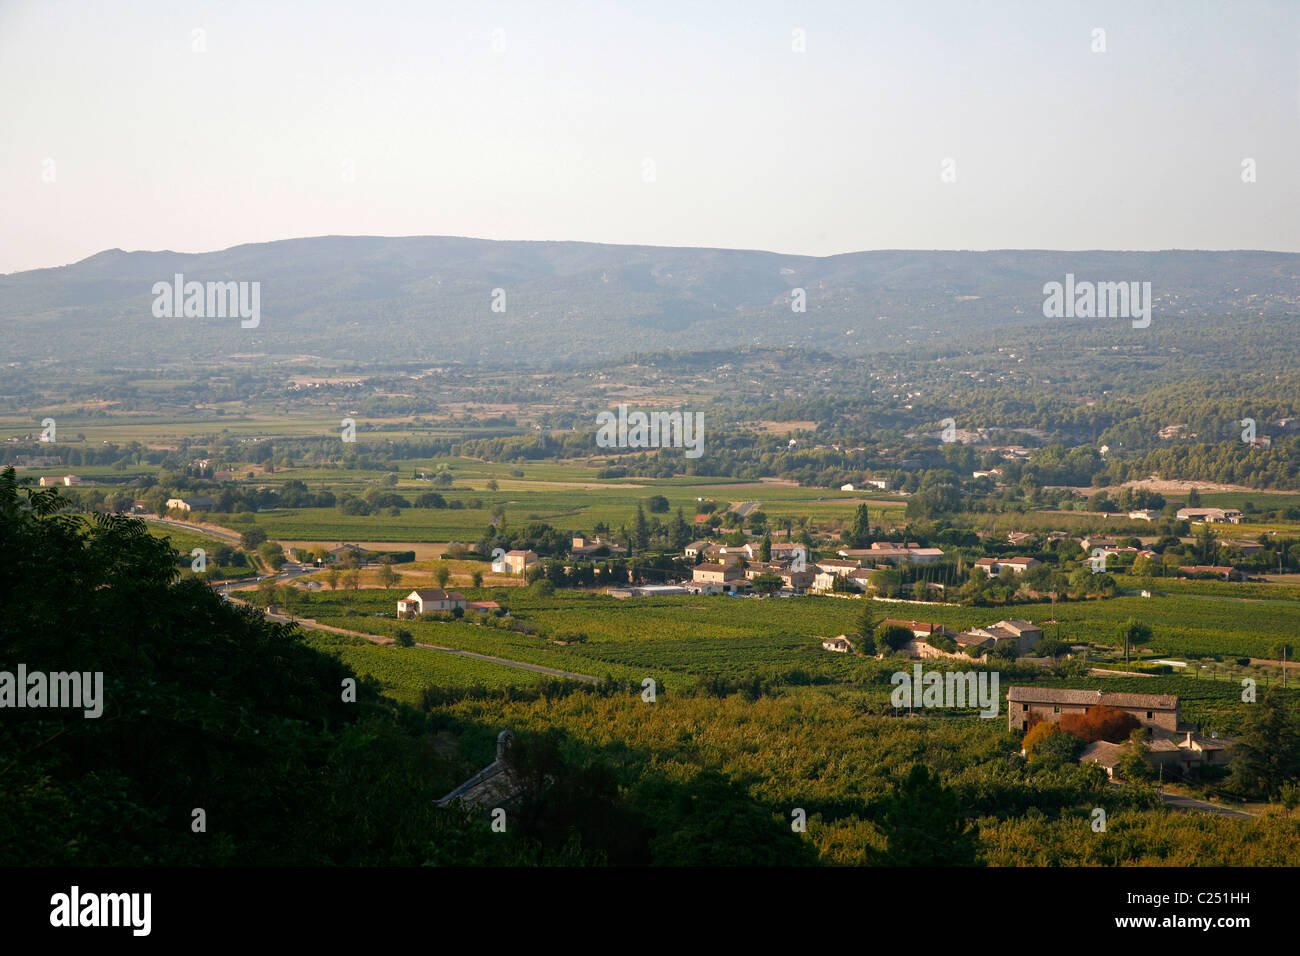 Paysage dans la région des collines du Luberon, Vaucluse, Provence, France. Banque D'Images